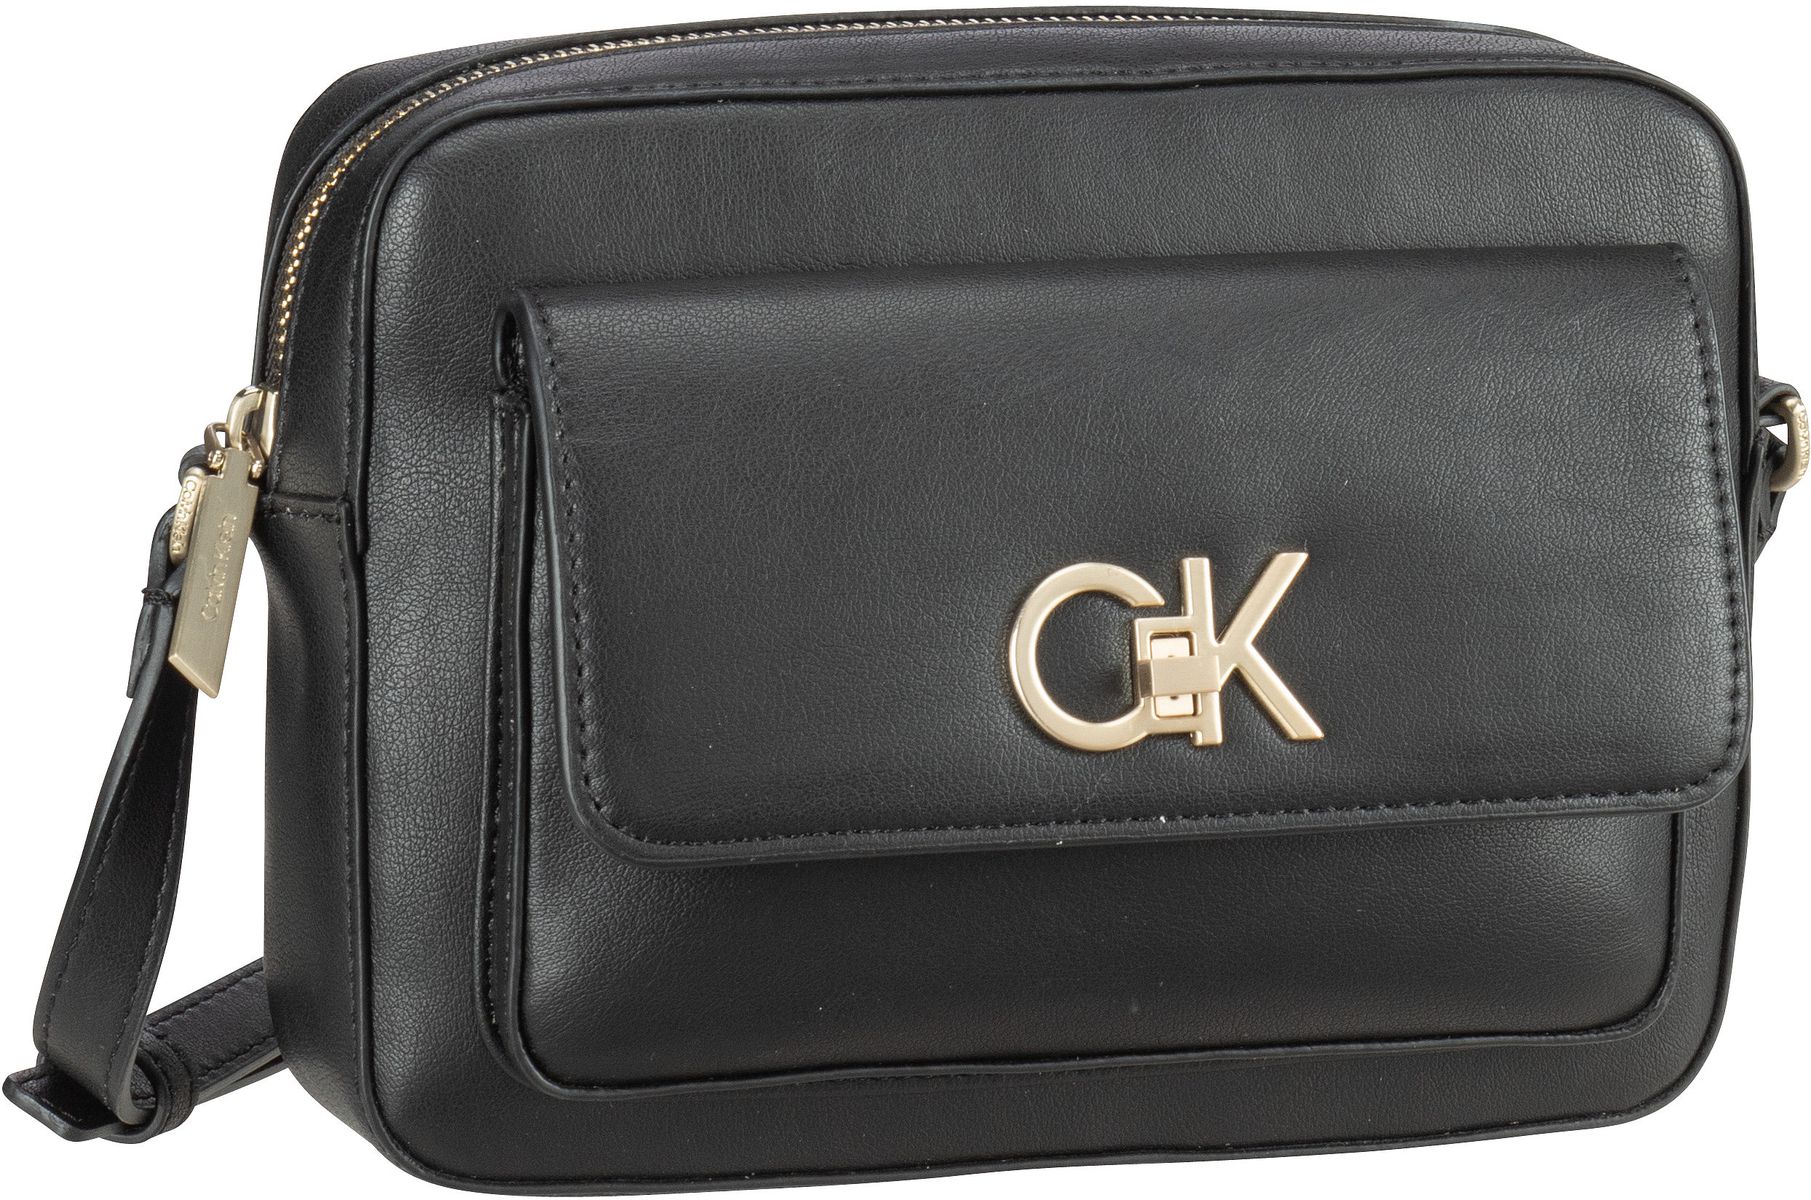 Calvin Klein Re-Lock Camera Bag with Flap PSP24  in CK Black (3 Liter), Umhängetasche